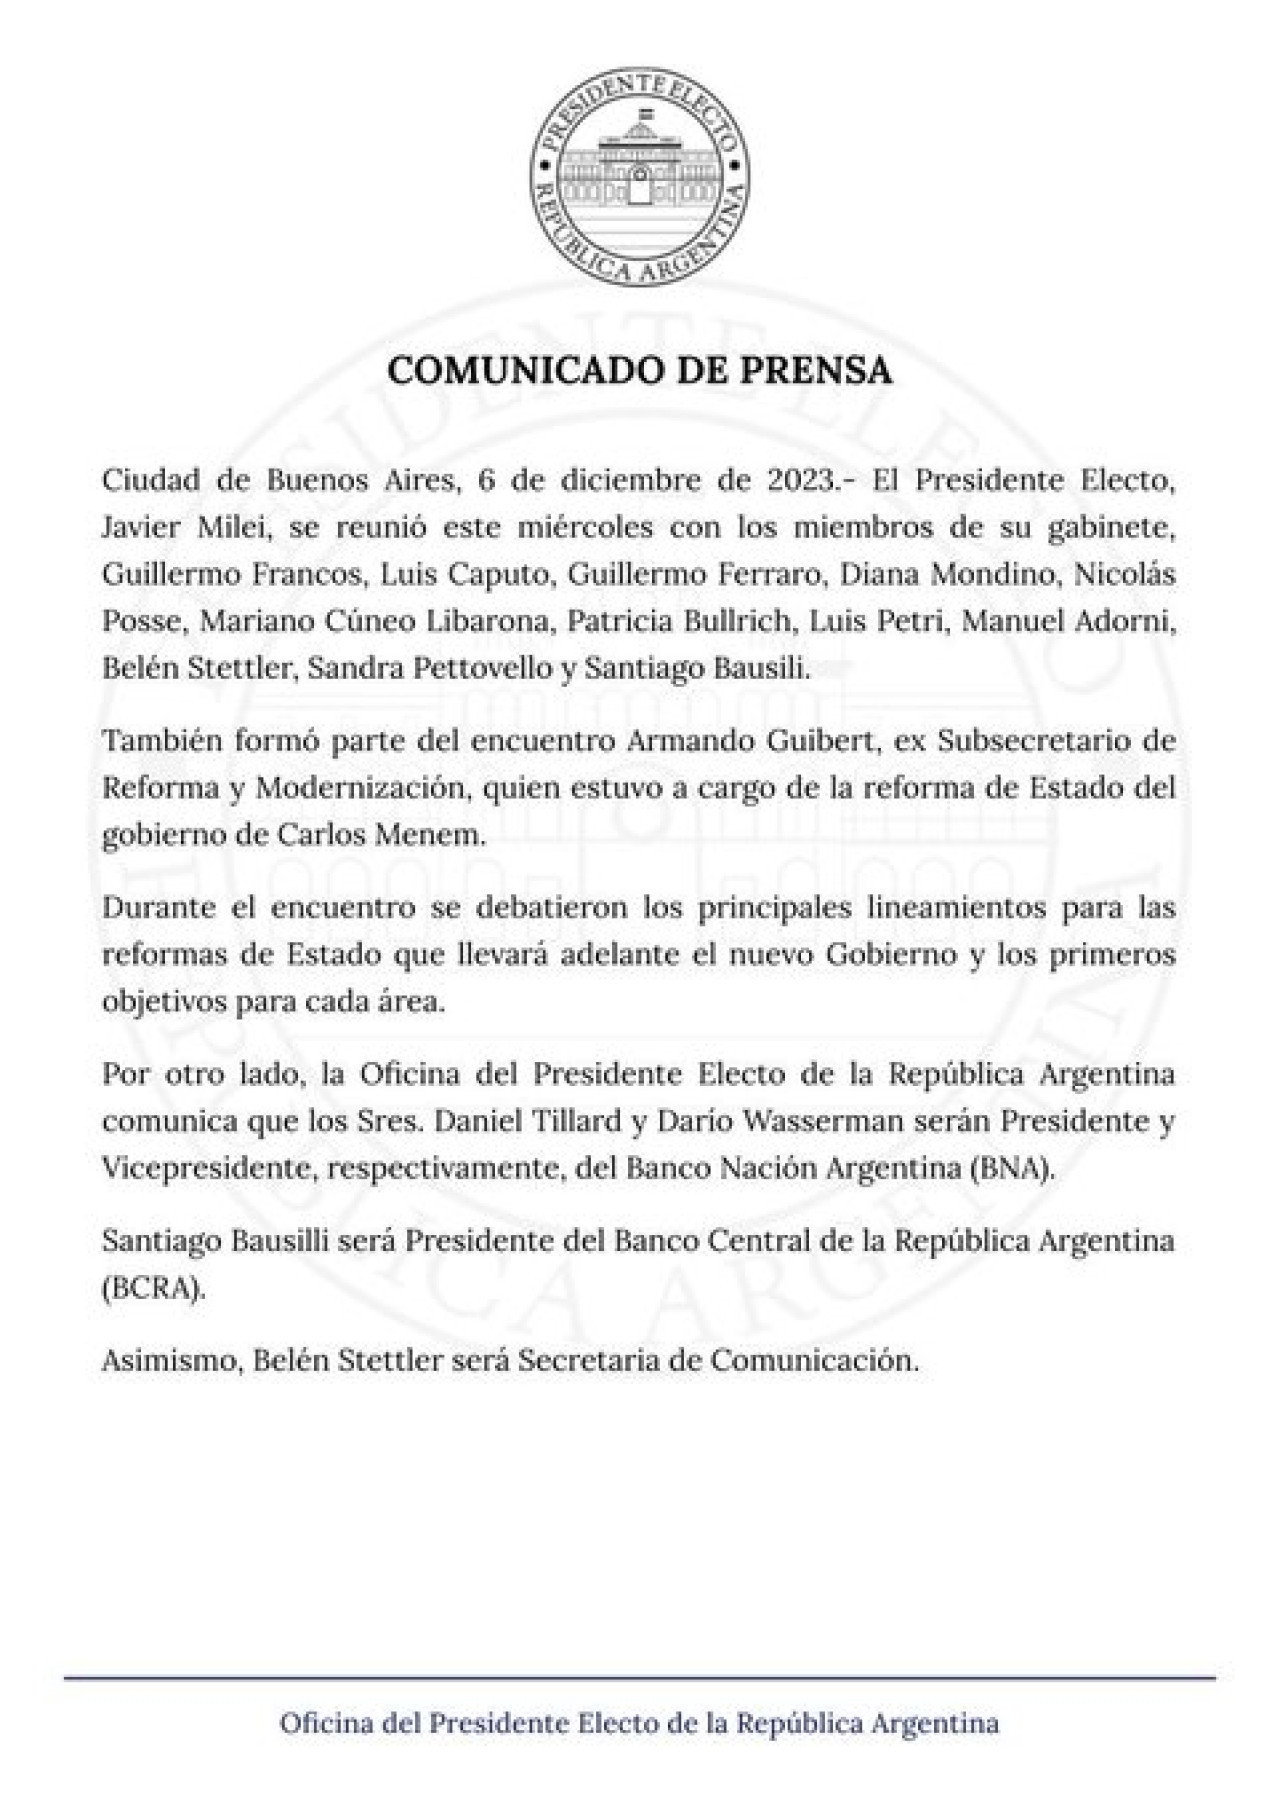 Comunicado de prensa sobre las nuevas designaciones en el gabinete de Javier Milei.